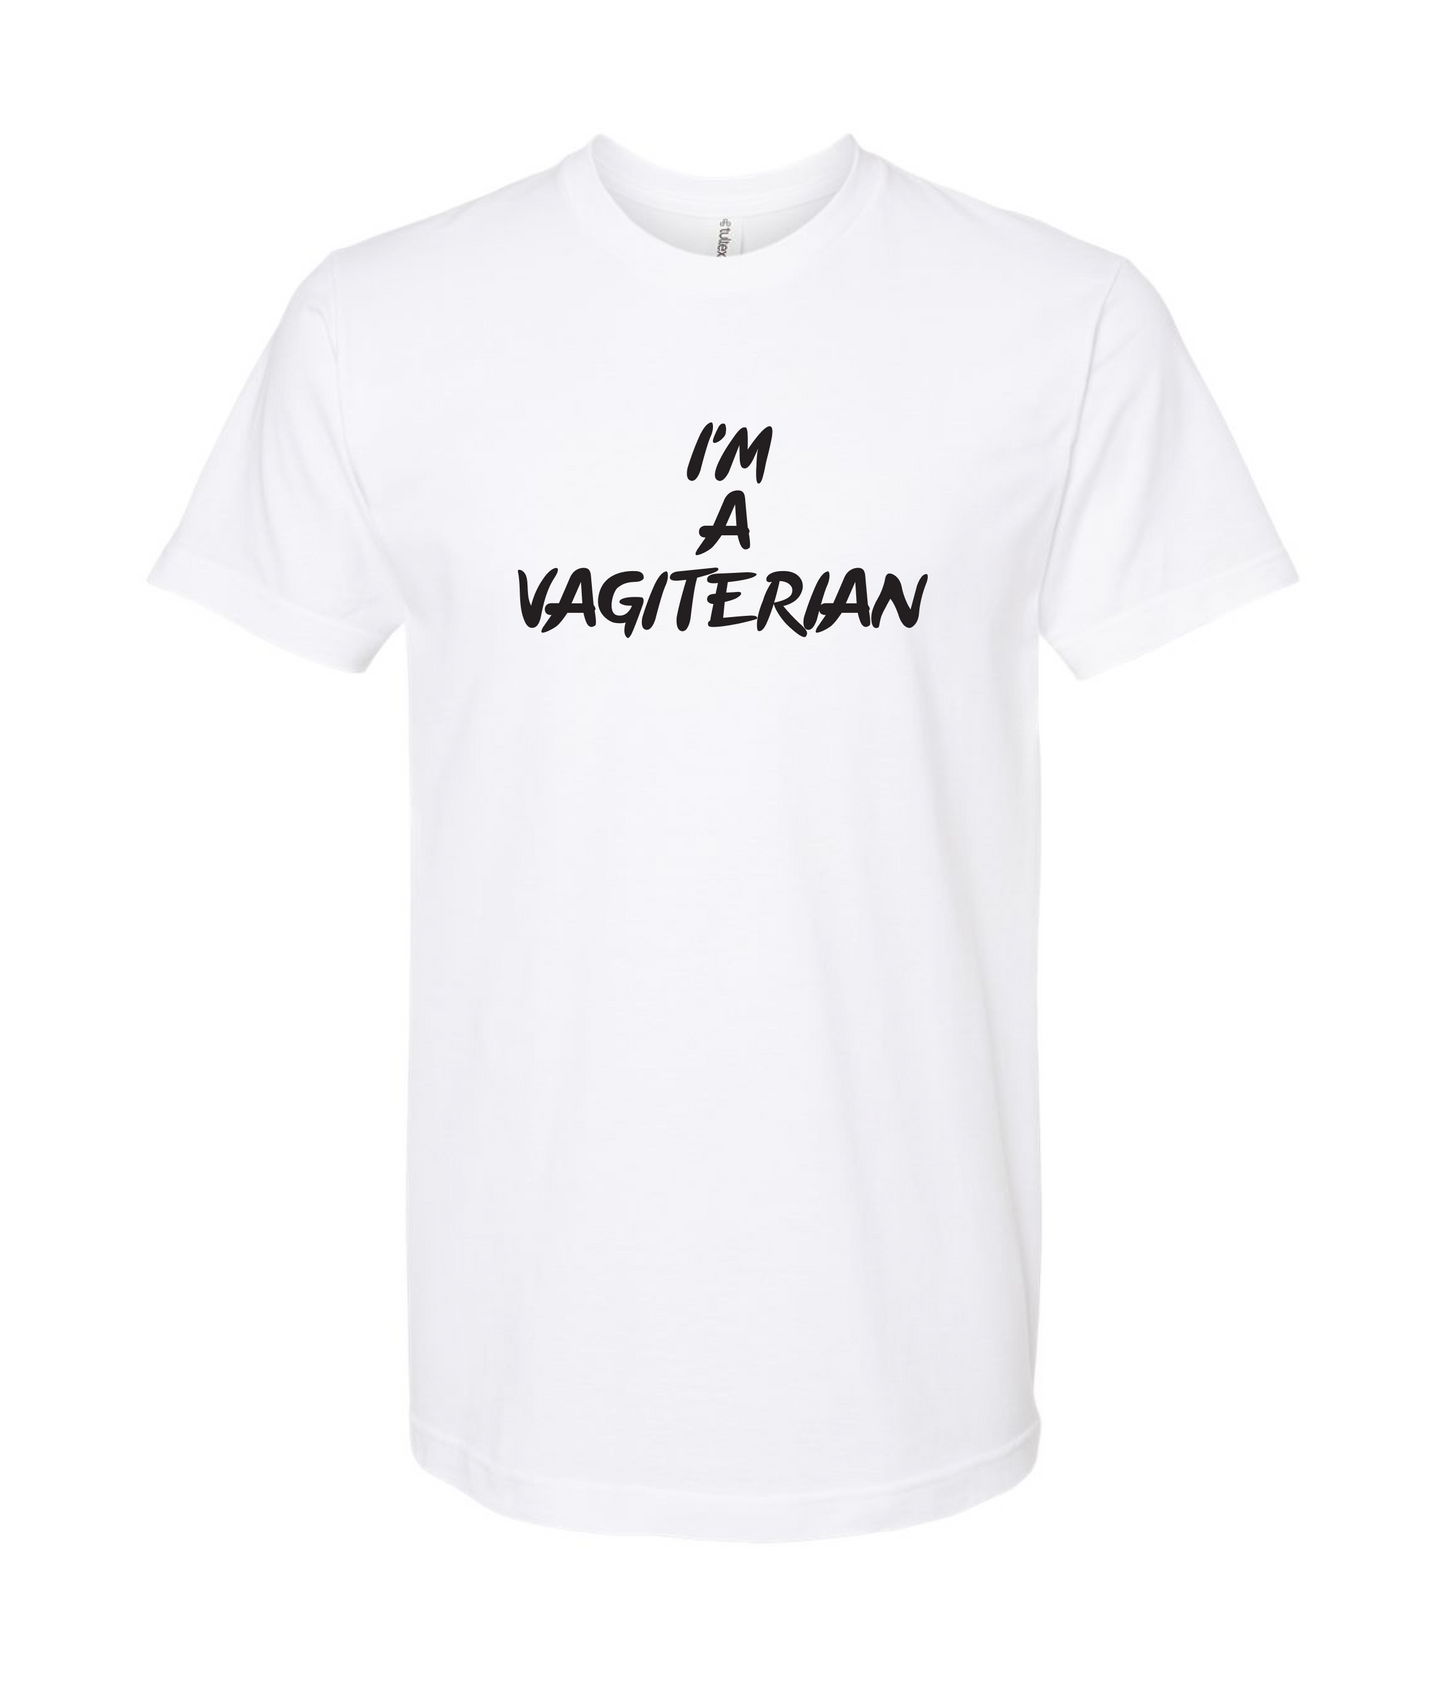 Vagiterian T Shirt